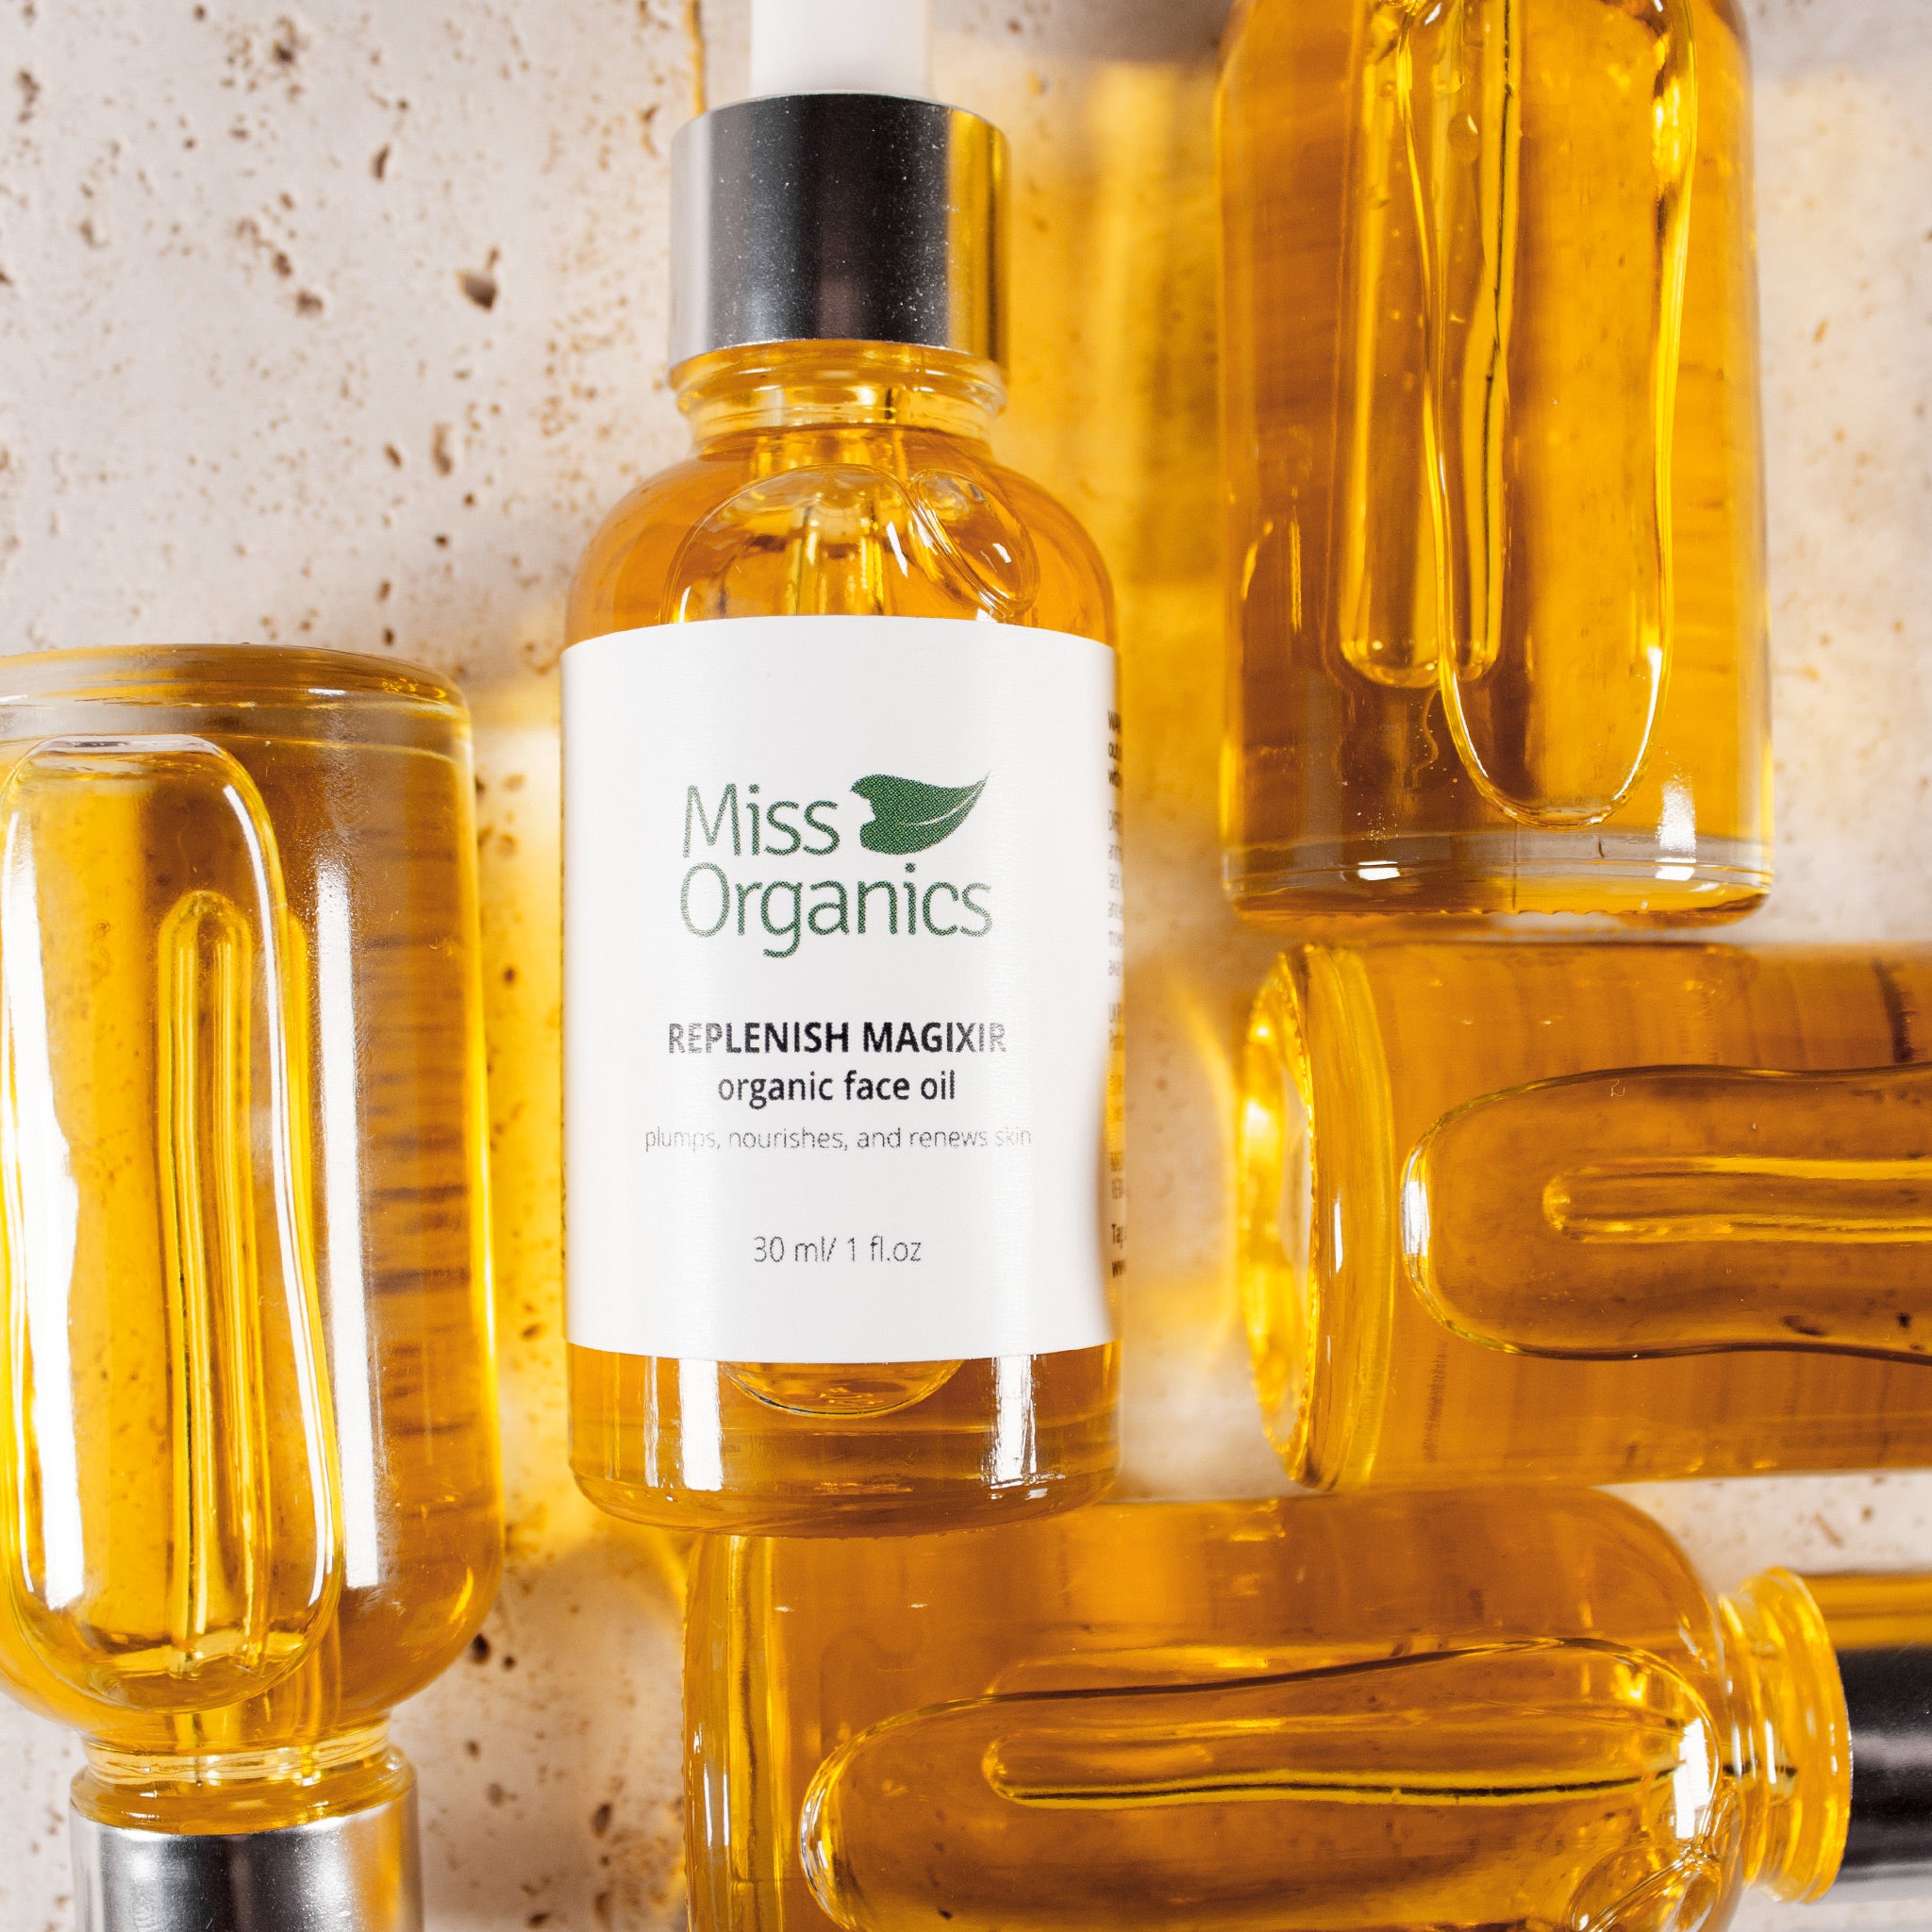 Replenish magixir face oil with oil bottles